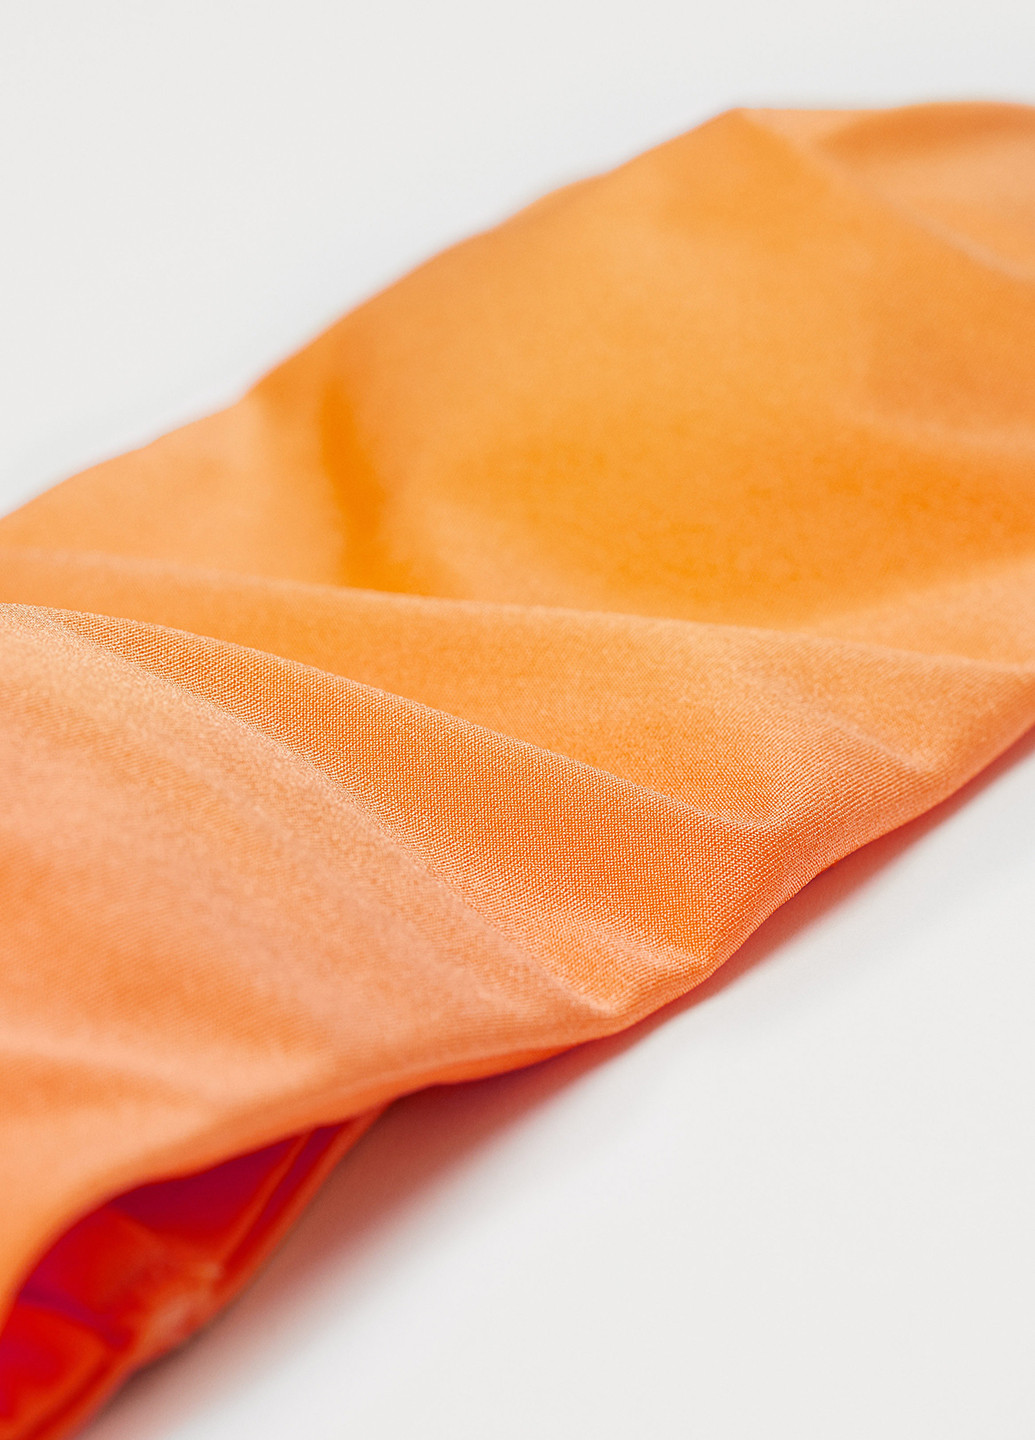 Купальный лиф H&M бандо однотонный оранжевый пляжный полиамид